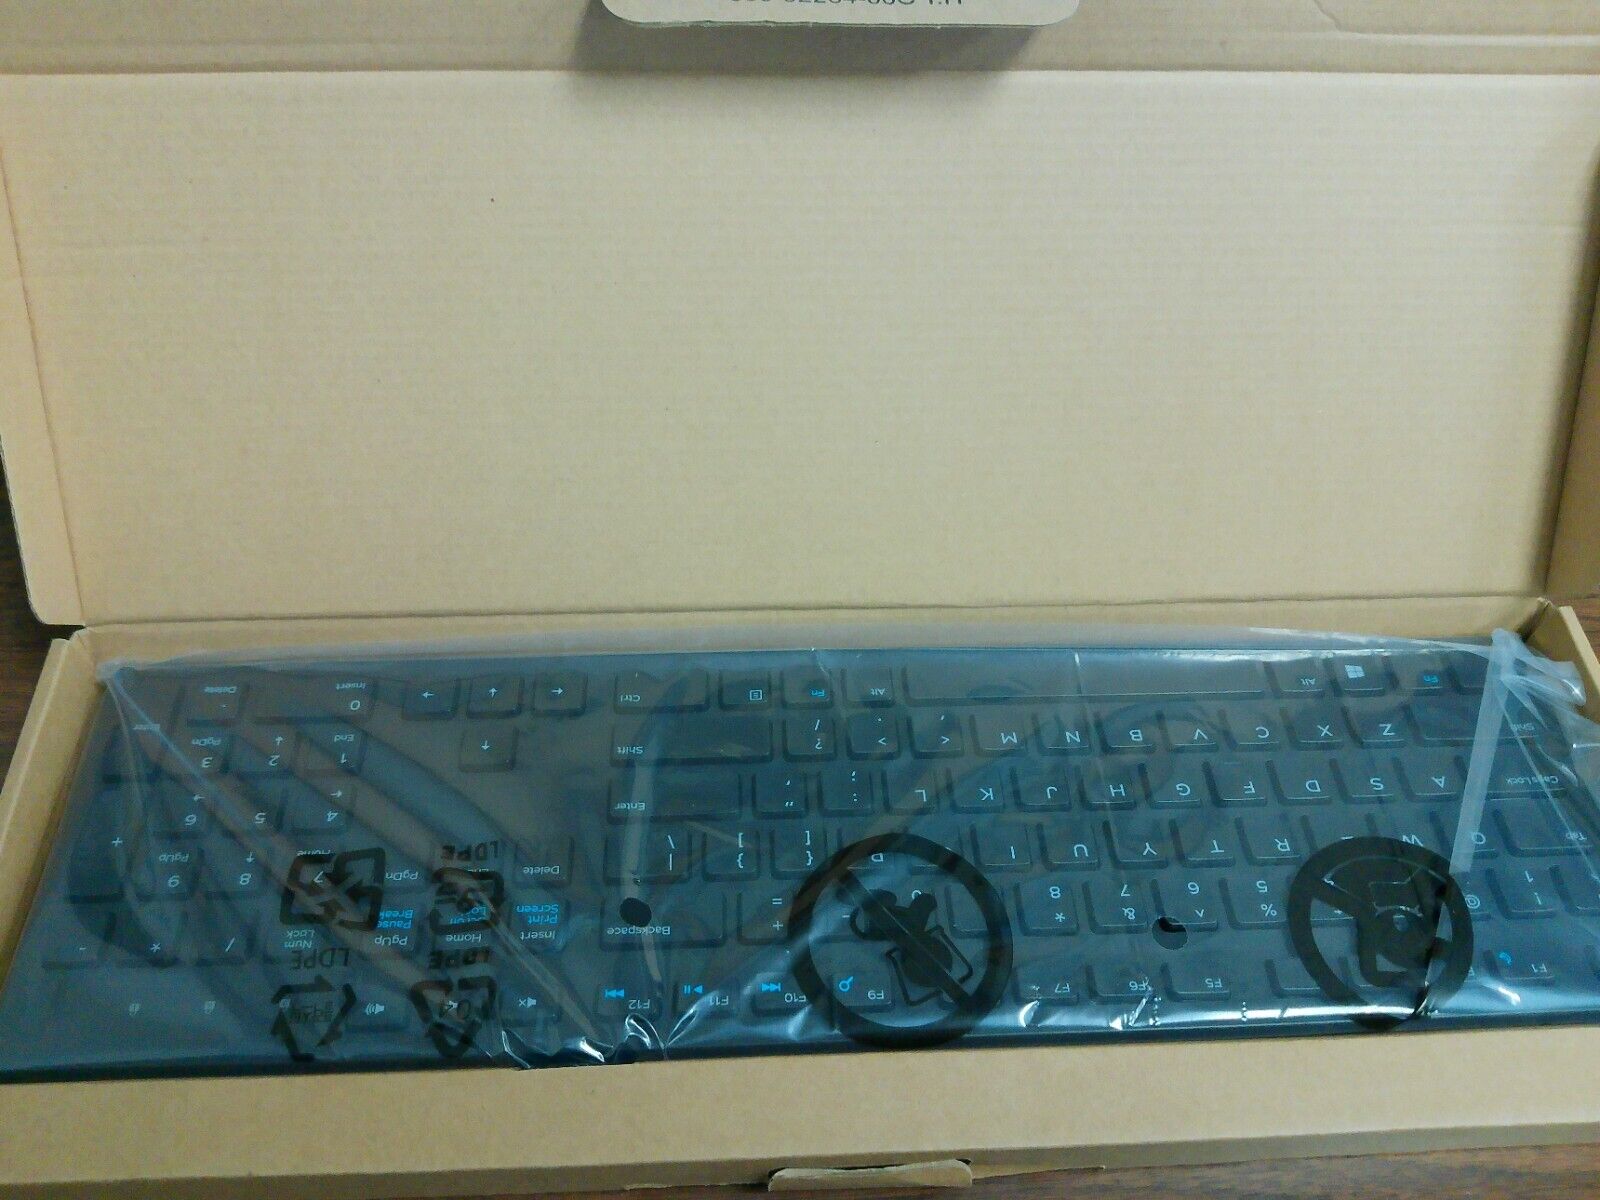 New Dell KB216t-BK-US USB Wired Keyboard Computer Keyboard Slim Black